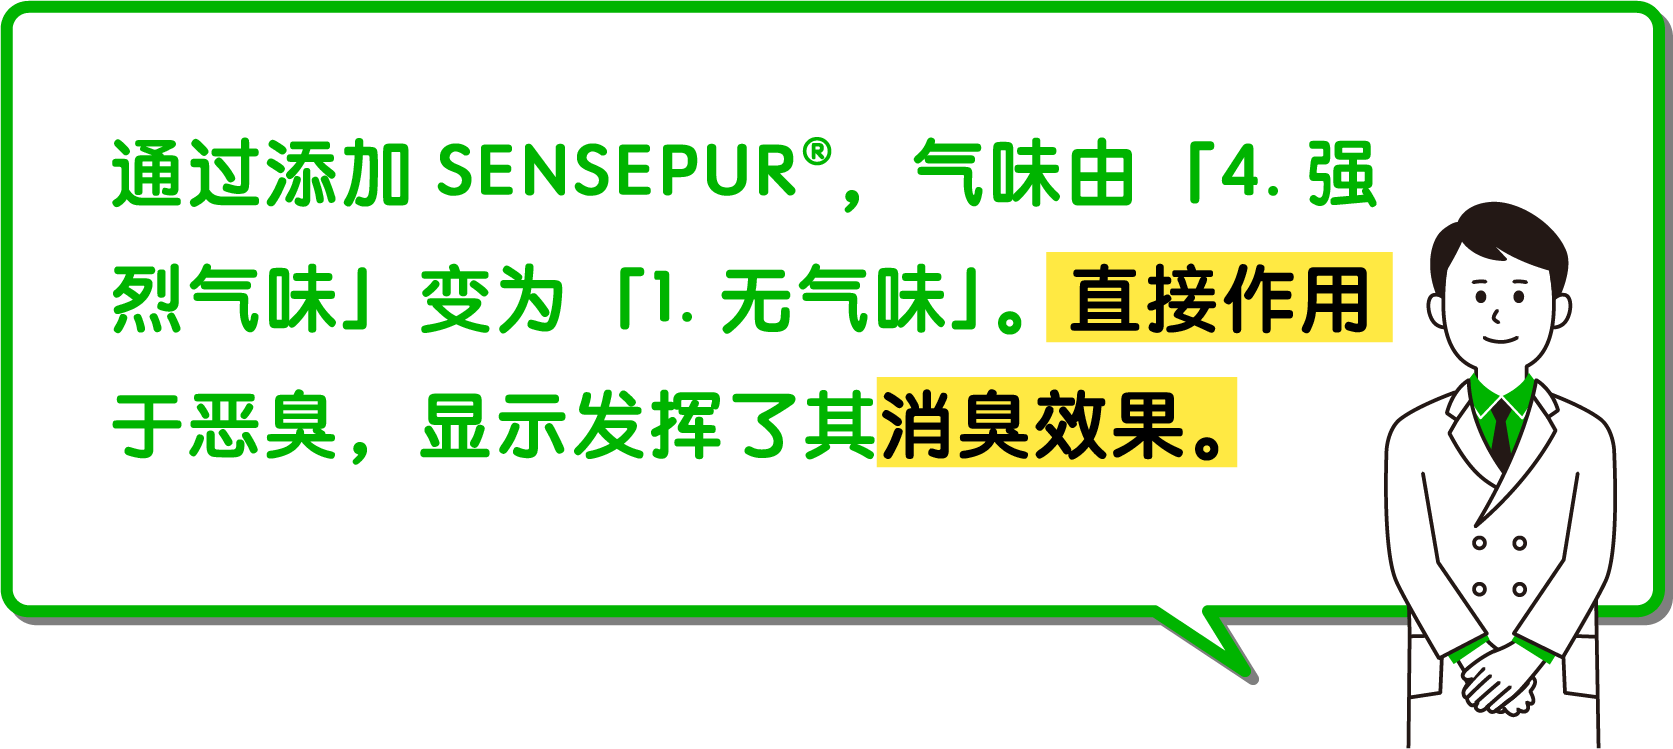 通过添加SENSEPUR，气味由「4.强烈气味」变为「1.无气味」。直接作用于恶臭，显示发挥了其消臭效果。